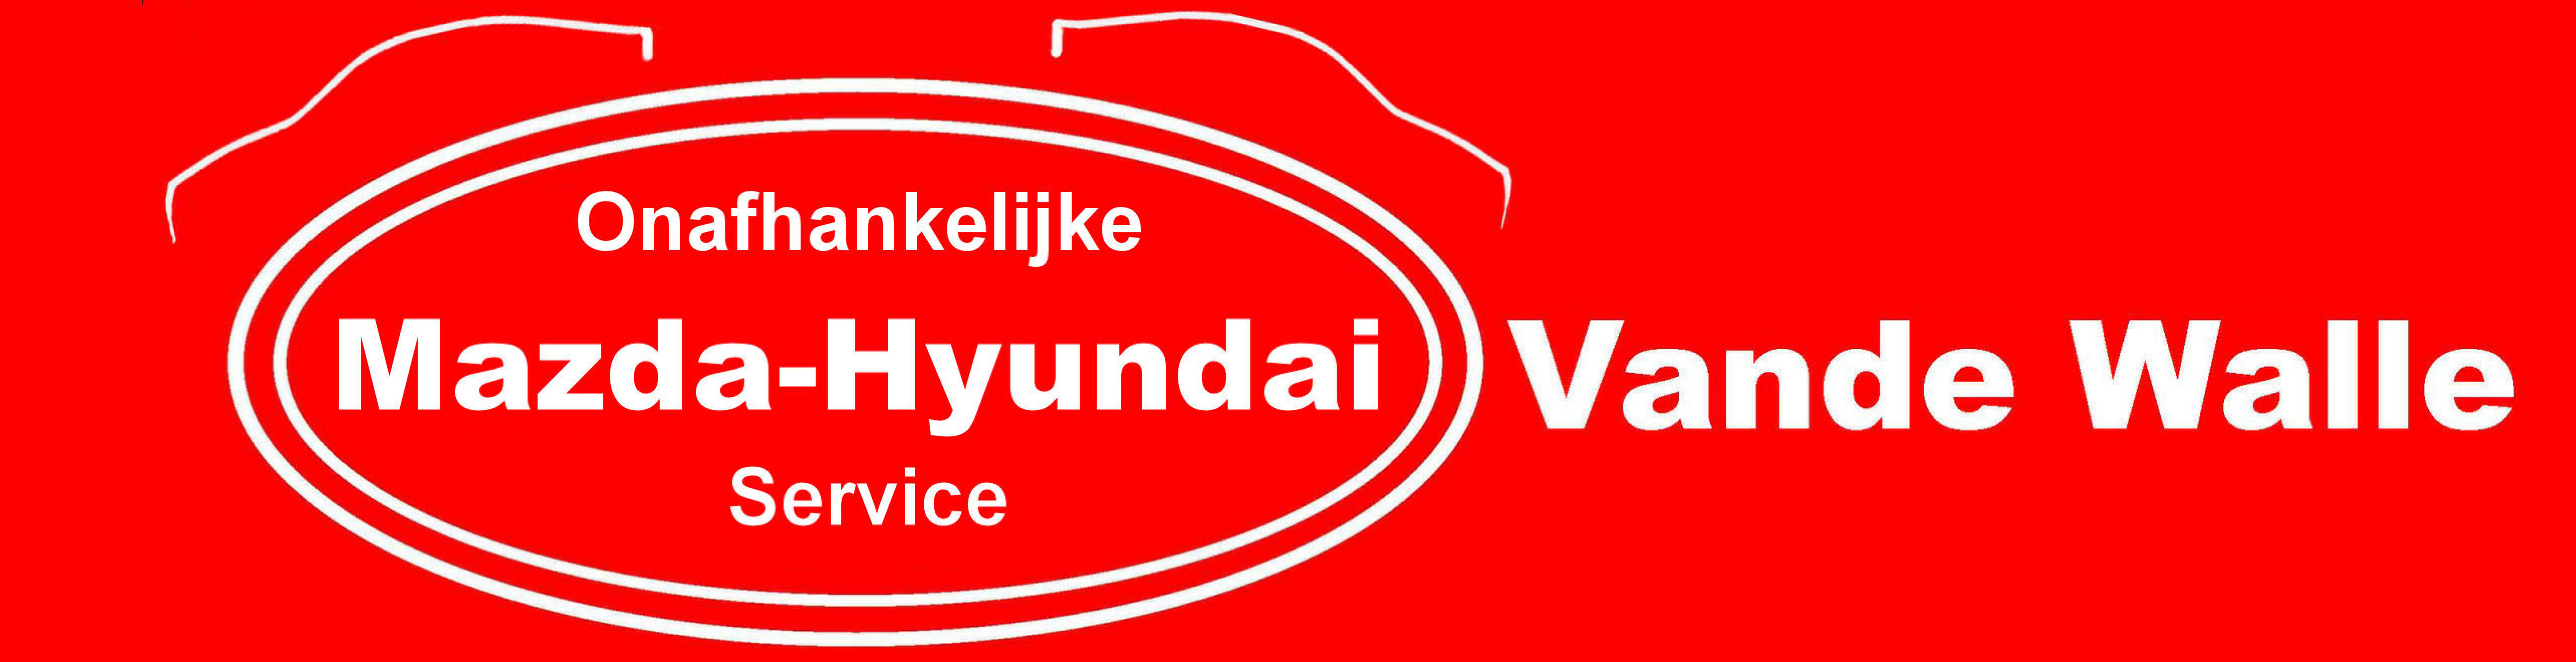 Garage Vande Walle logo